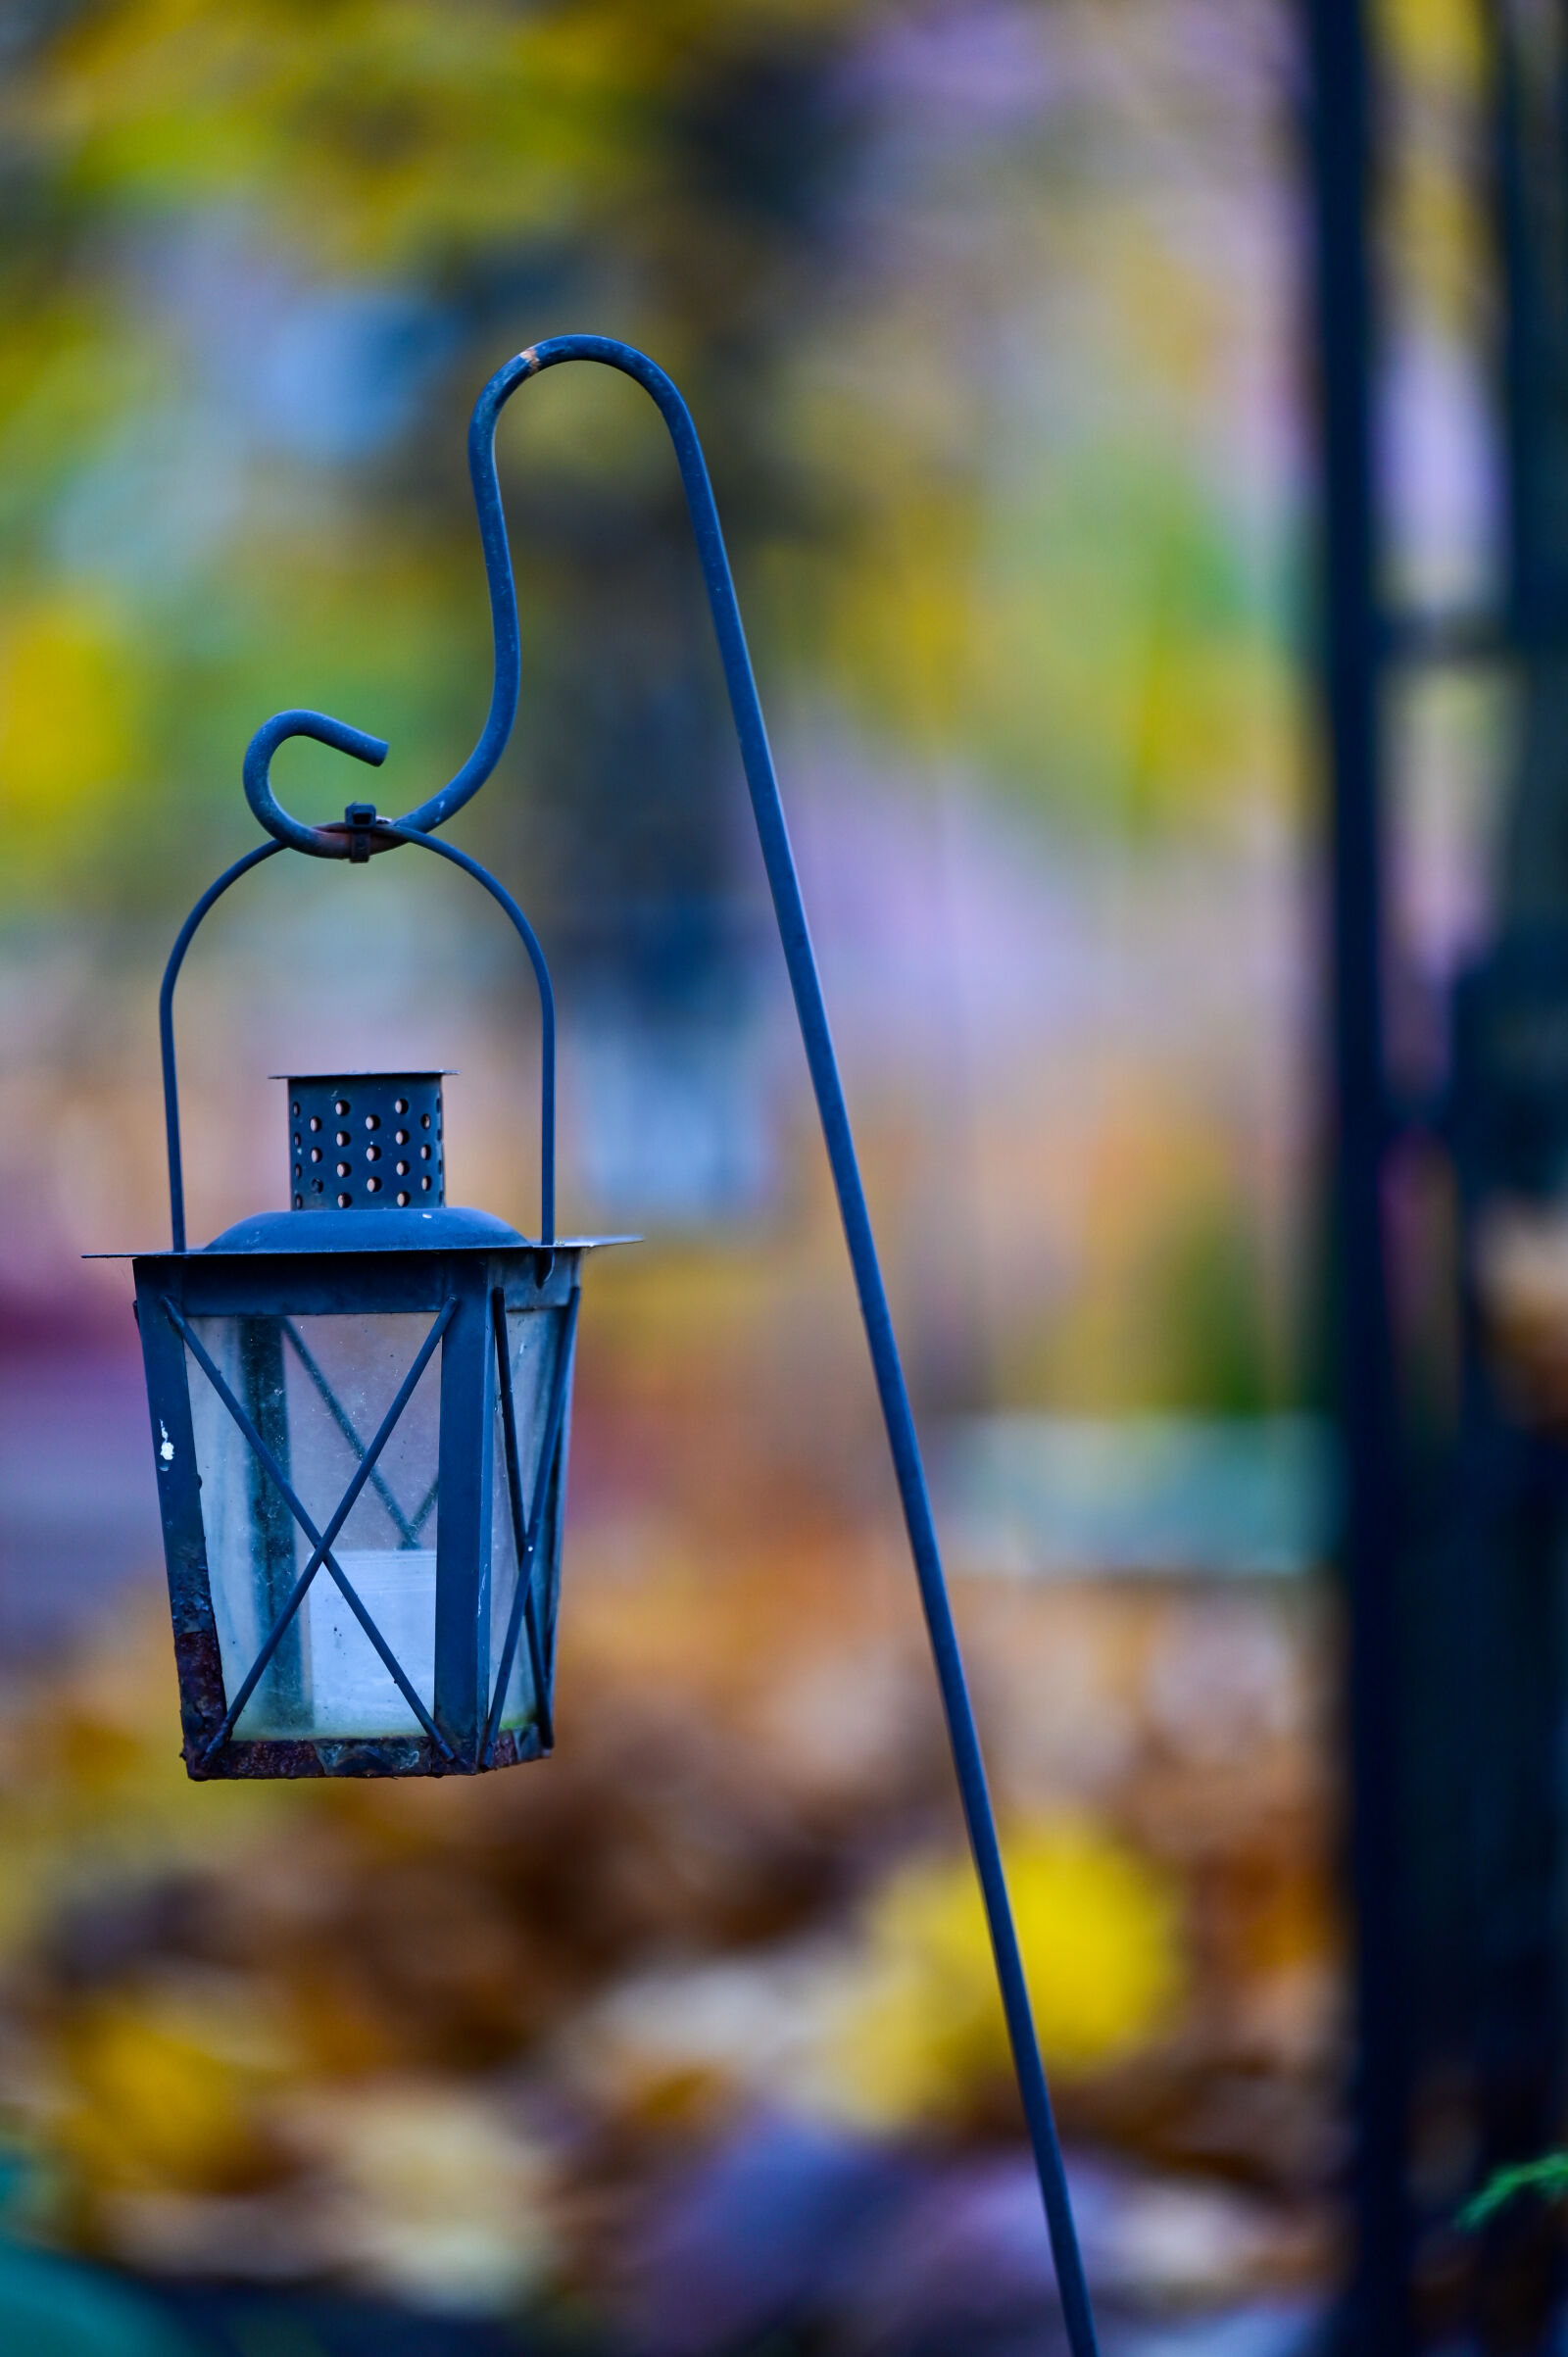 Nikon Z6 II sample photo. Lantern of autumn photography